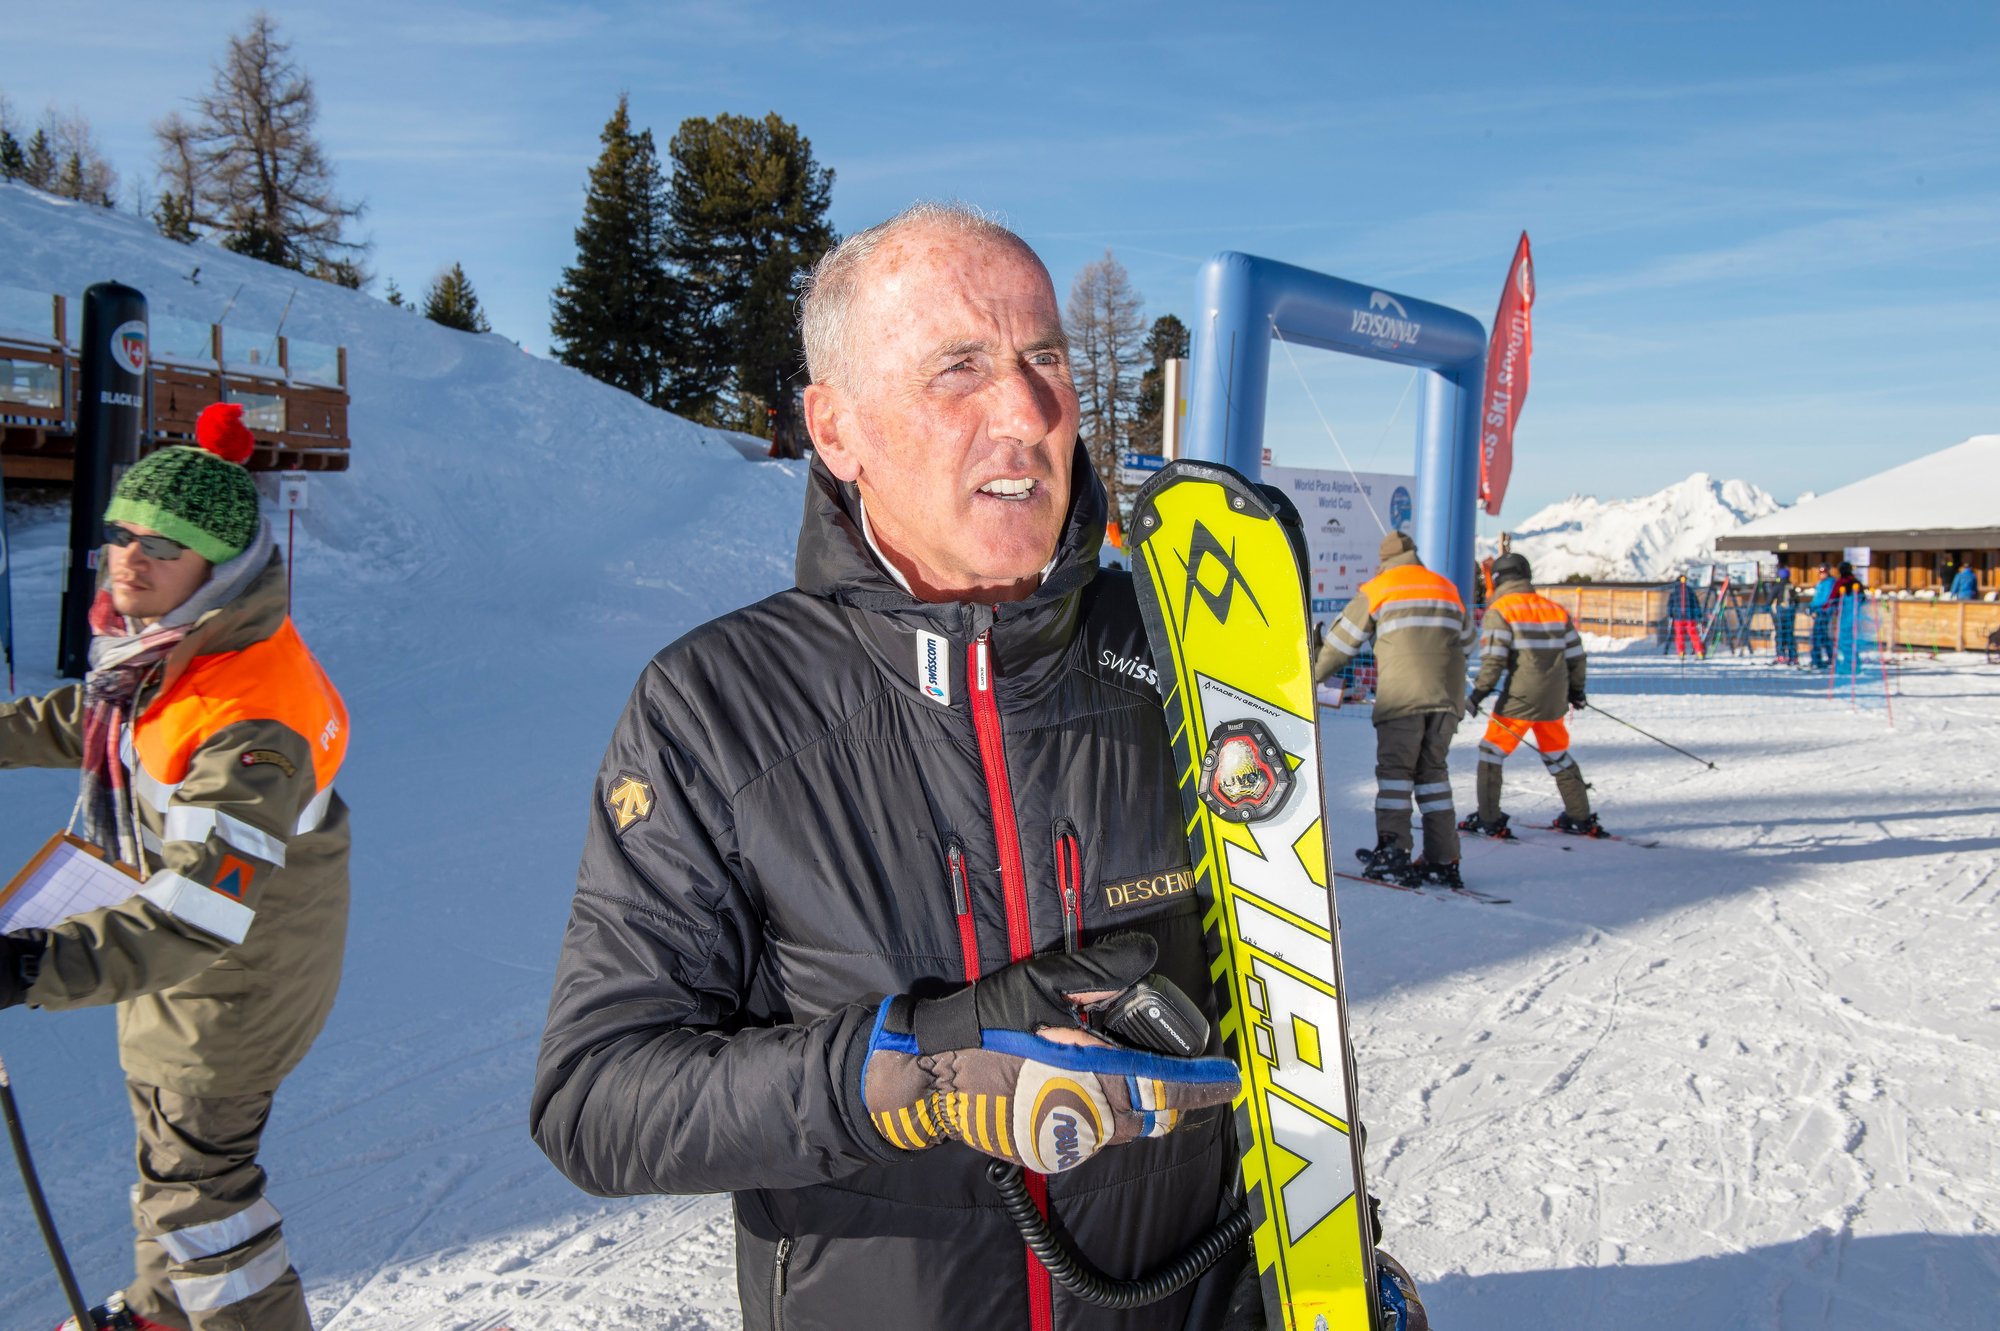 Didier Bonvin est aux commandes de toutes les courses qui se déroulent à Veysonnaz durant l'hiver. Il cherche à positionner la station auprès de la FIS.